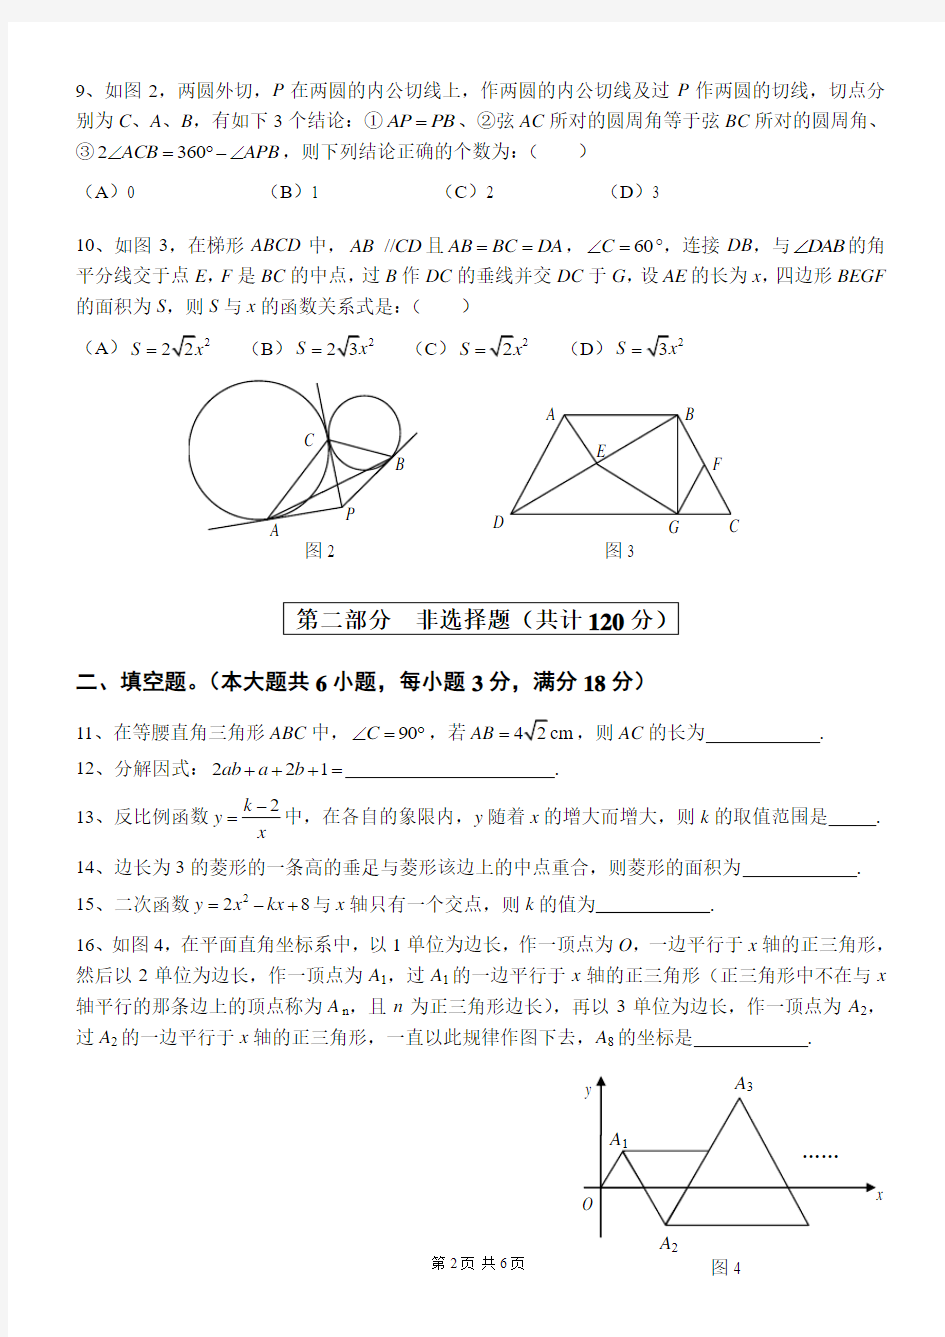 2014年广州中考数学科模拟测试题